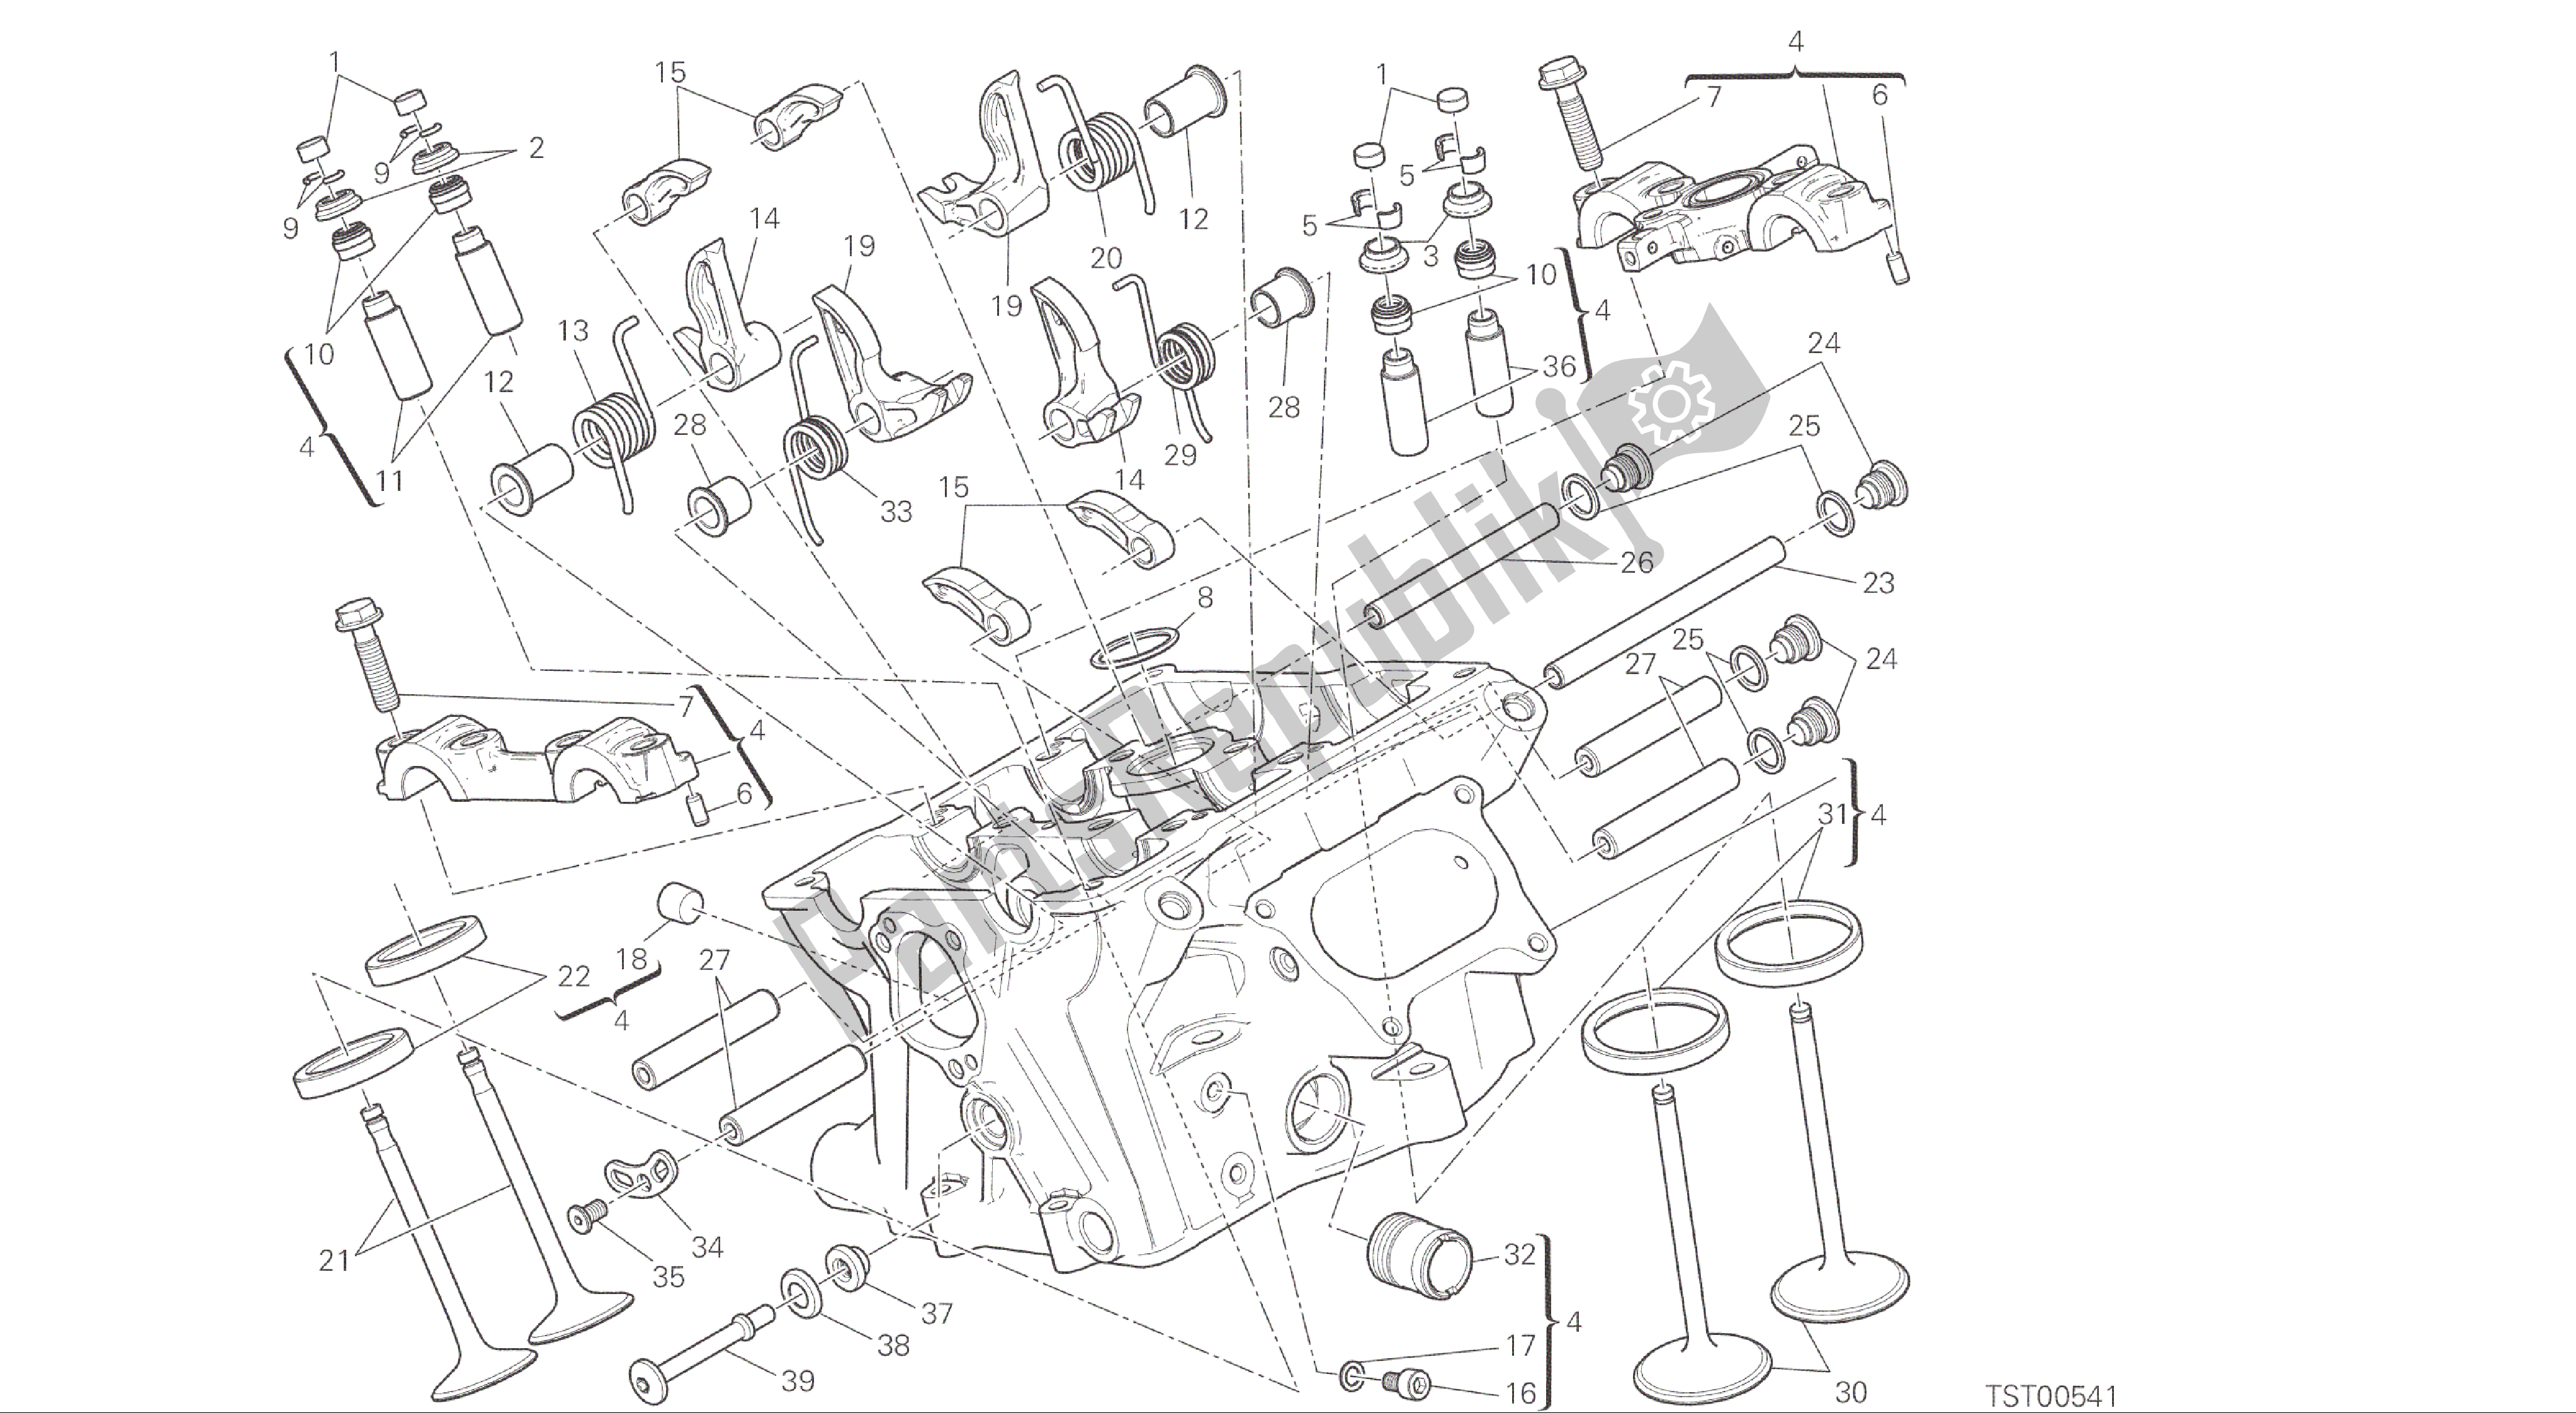 Todas las partes para Dibujo 015 - Cabezal Vertical [mod: 1299; Xst: Motor De Grupo Aus, Eur, Fra, Jap, Twn] de Ducati Panigale ABS 1299 2016